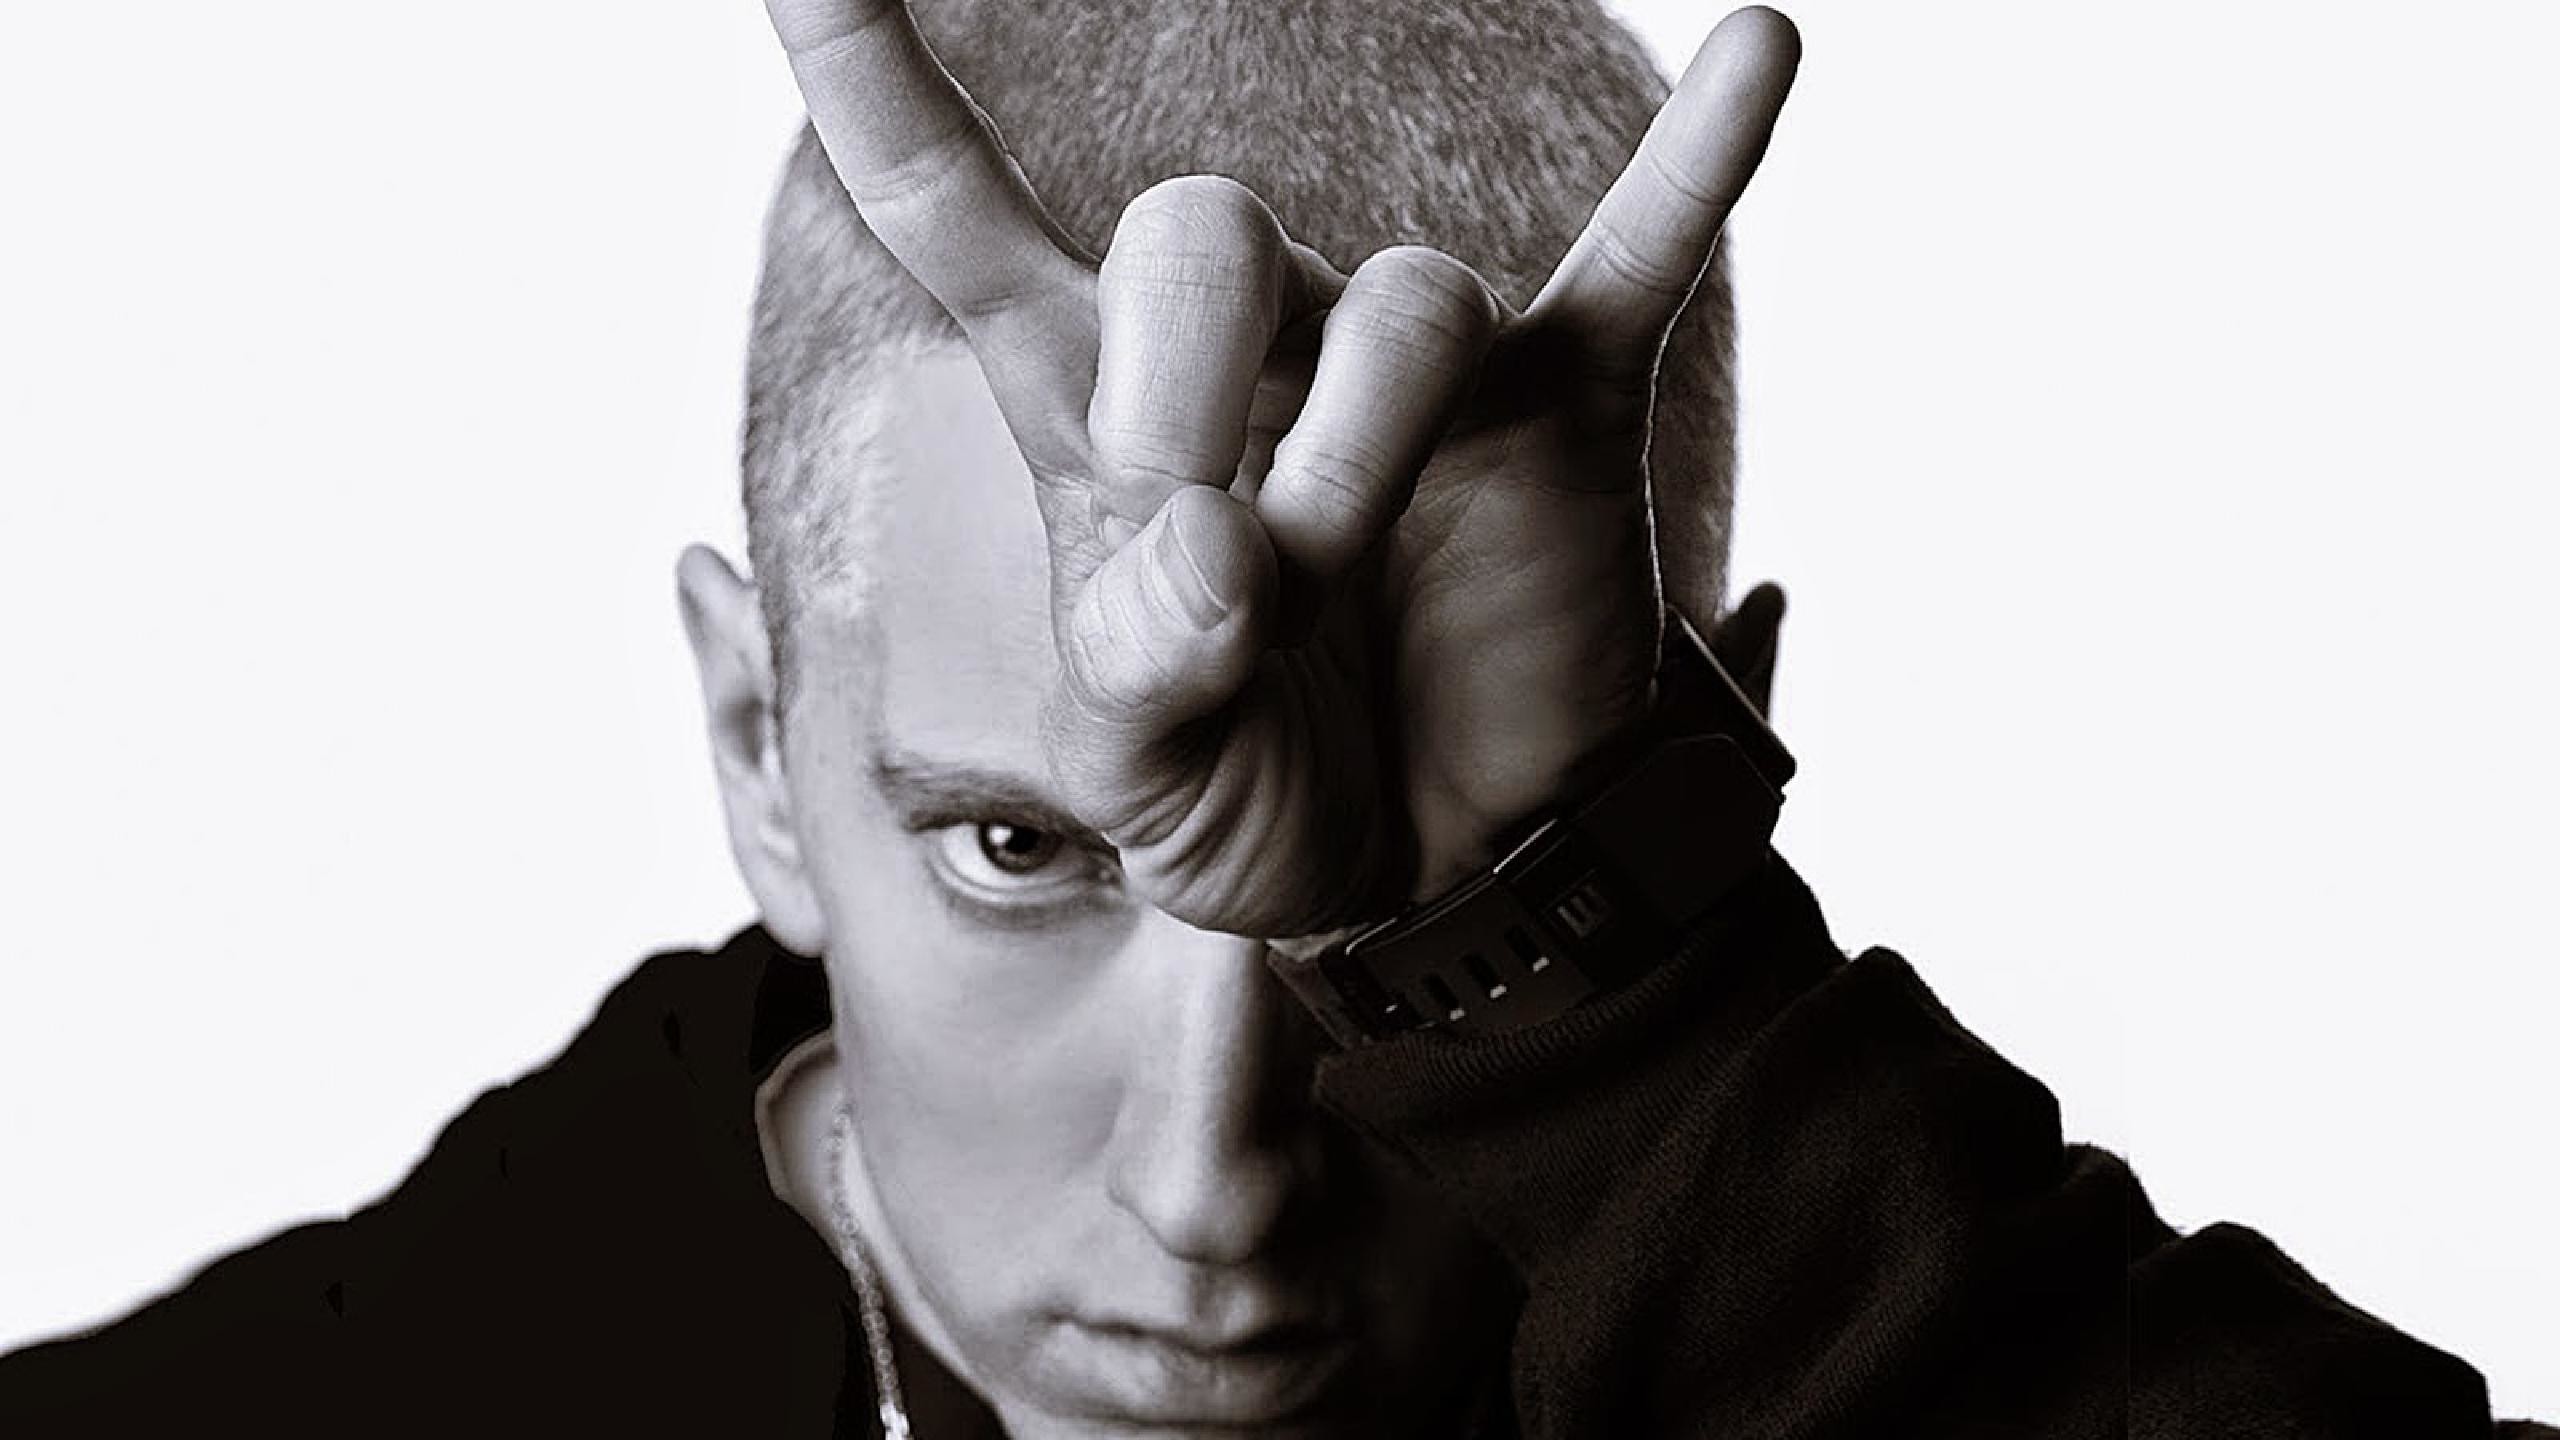 2560x1440 Eminem Tickets fÃ¼r 2017 2018 Tour. Information Ã¼ber Konzerte, Tour und  Karten von Eminem in 2017 2018 | Wegow